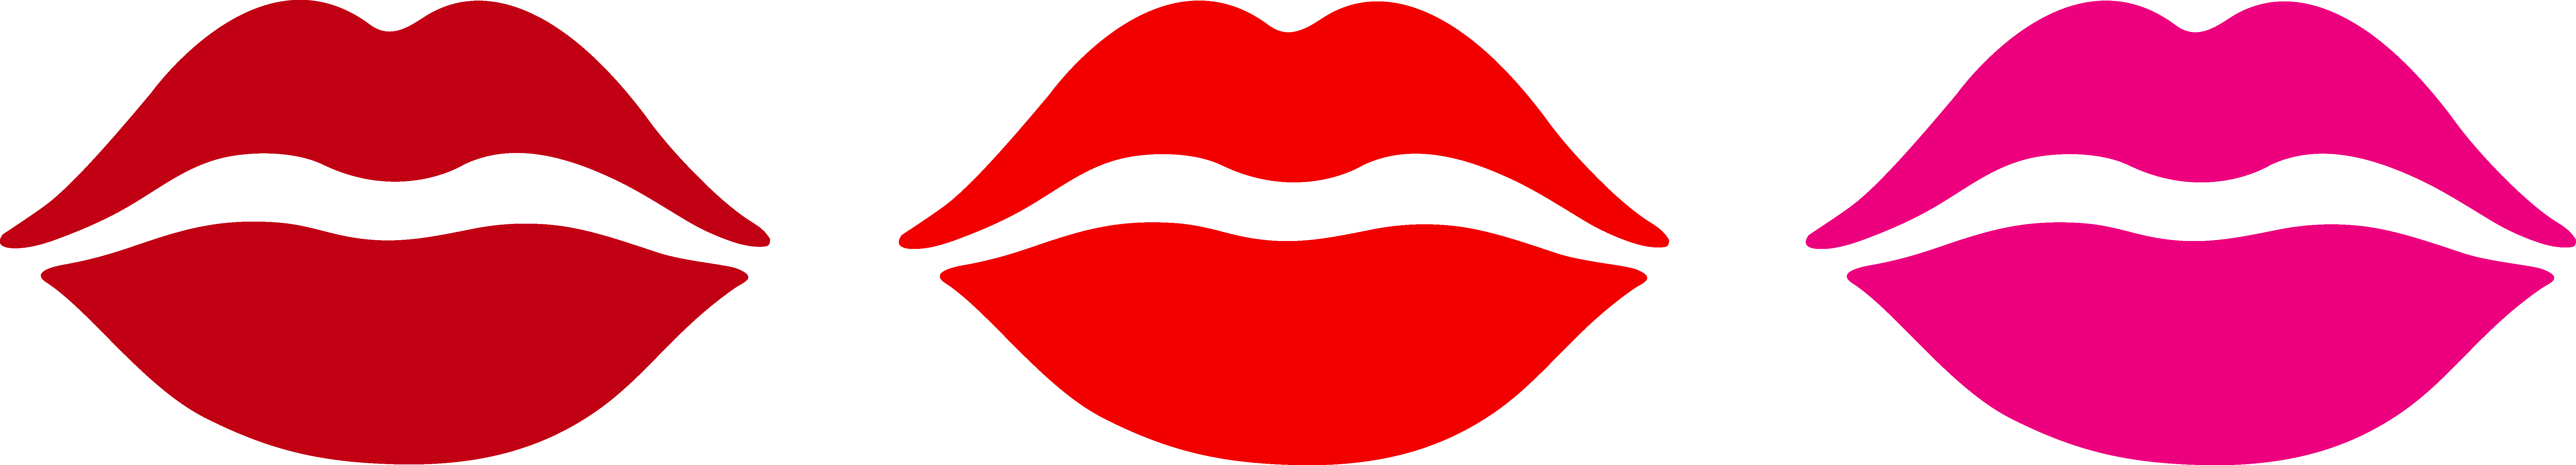 Best Photos of Lips Clip Art - Kiss Lips Clip Art Free, Cartoon ...